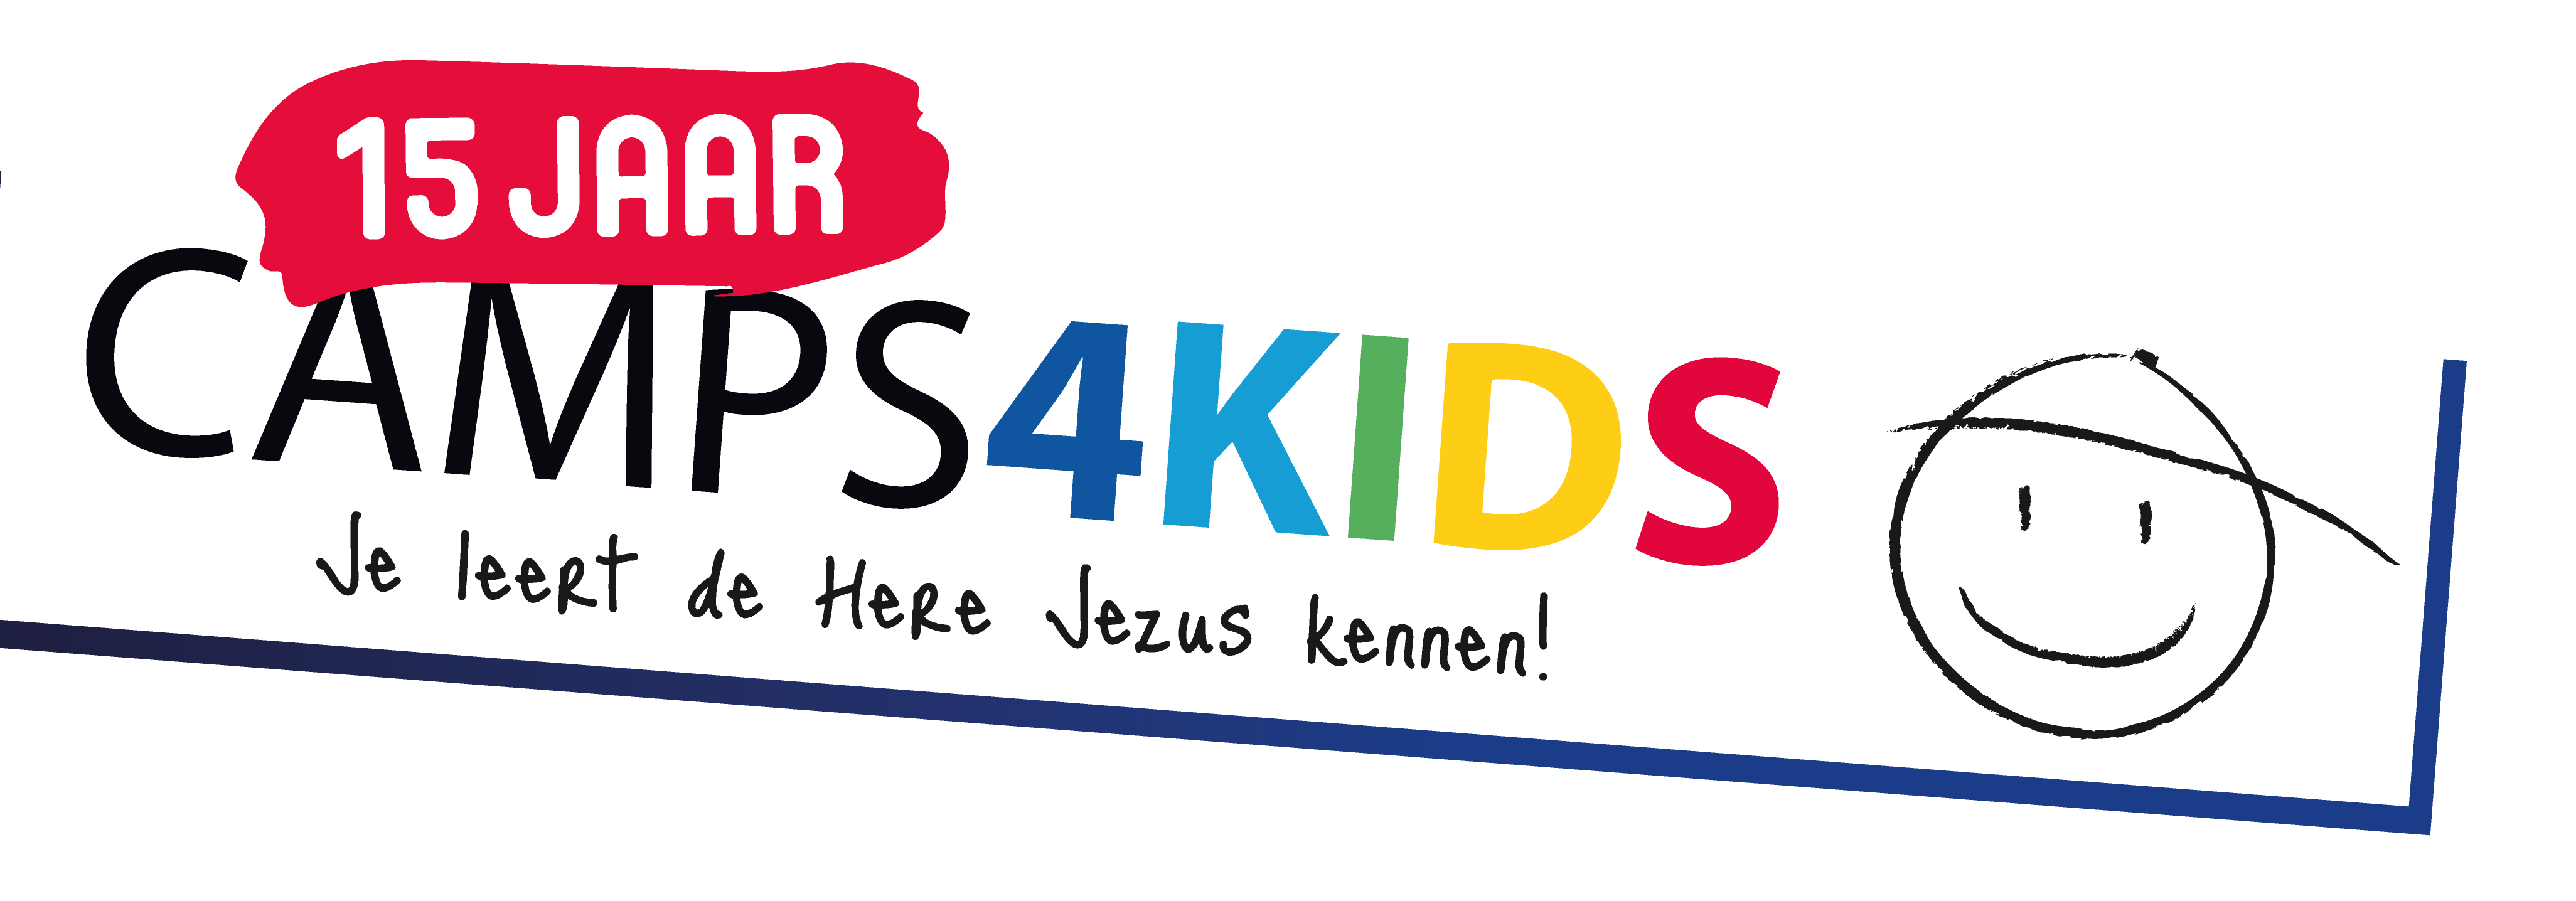 Camps4Kids_logo_15jaar (1)